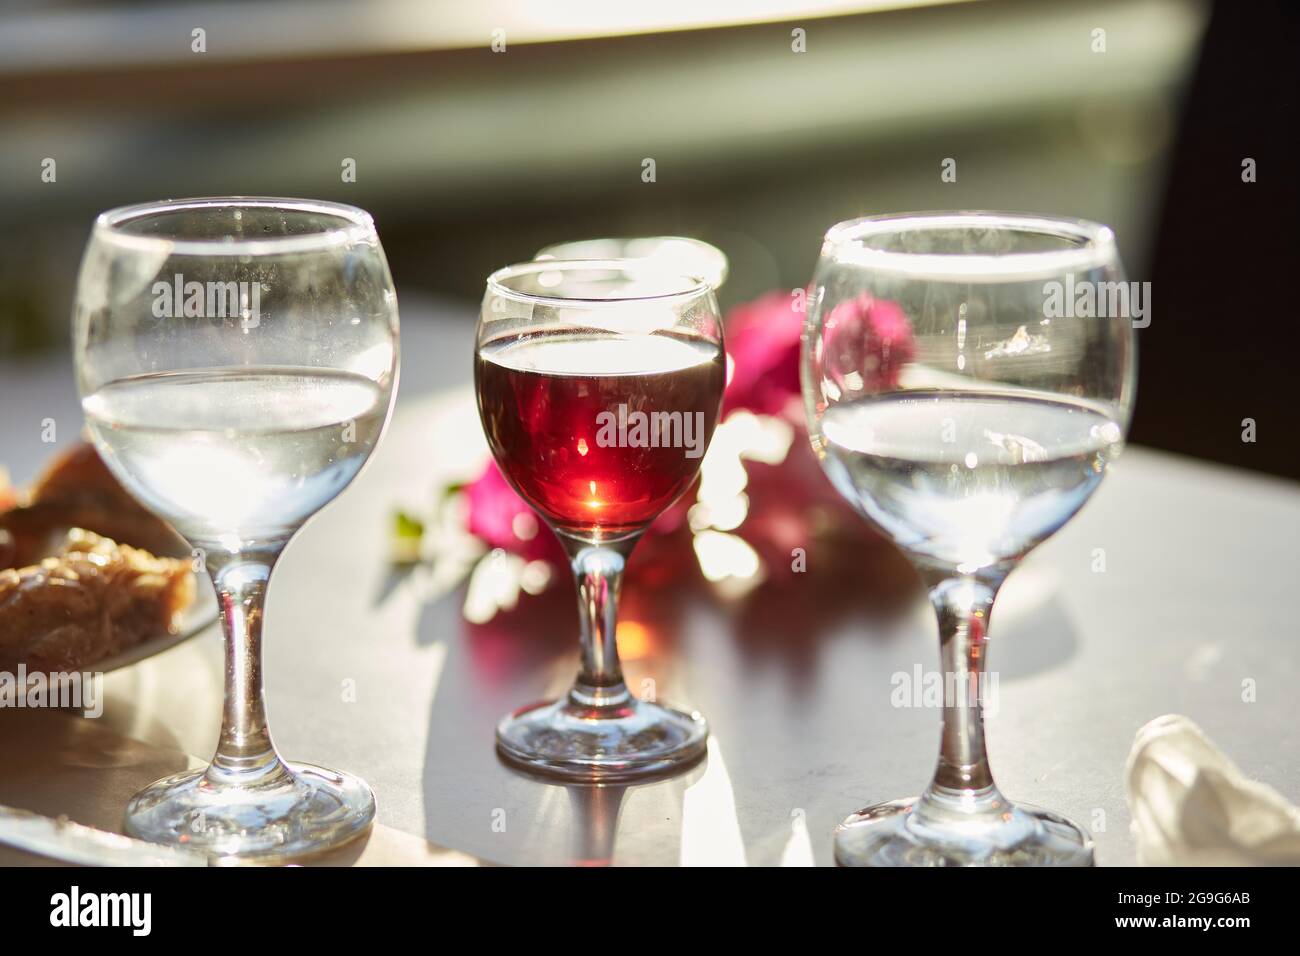 Ein Glas Rotwein und ein Glas Wasser auf dem Tisch. Dekorationen von rosa Bougainvillea Blumen. Speicherplatz kopieren. Stockfoto